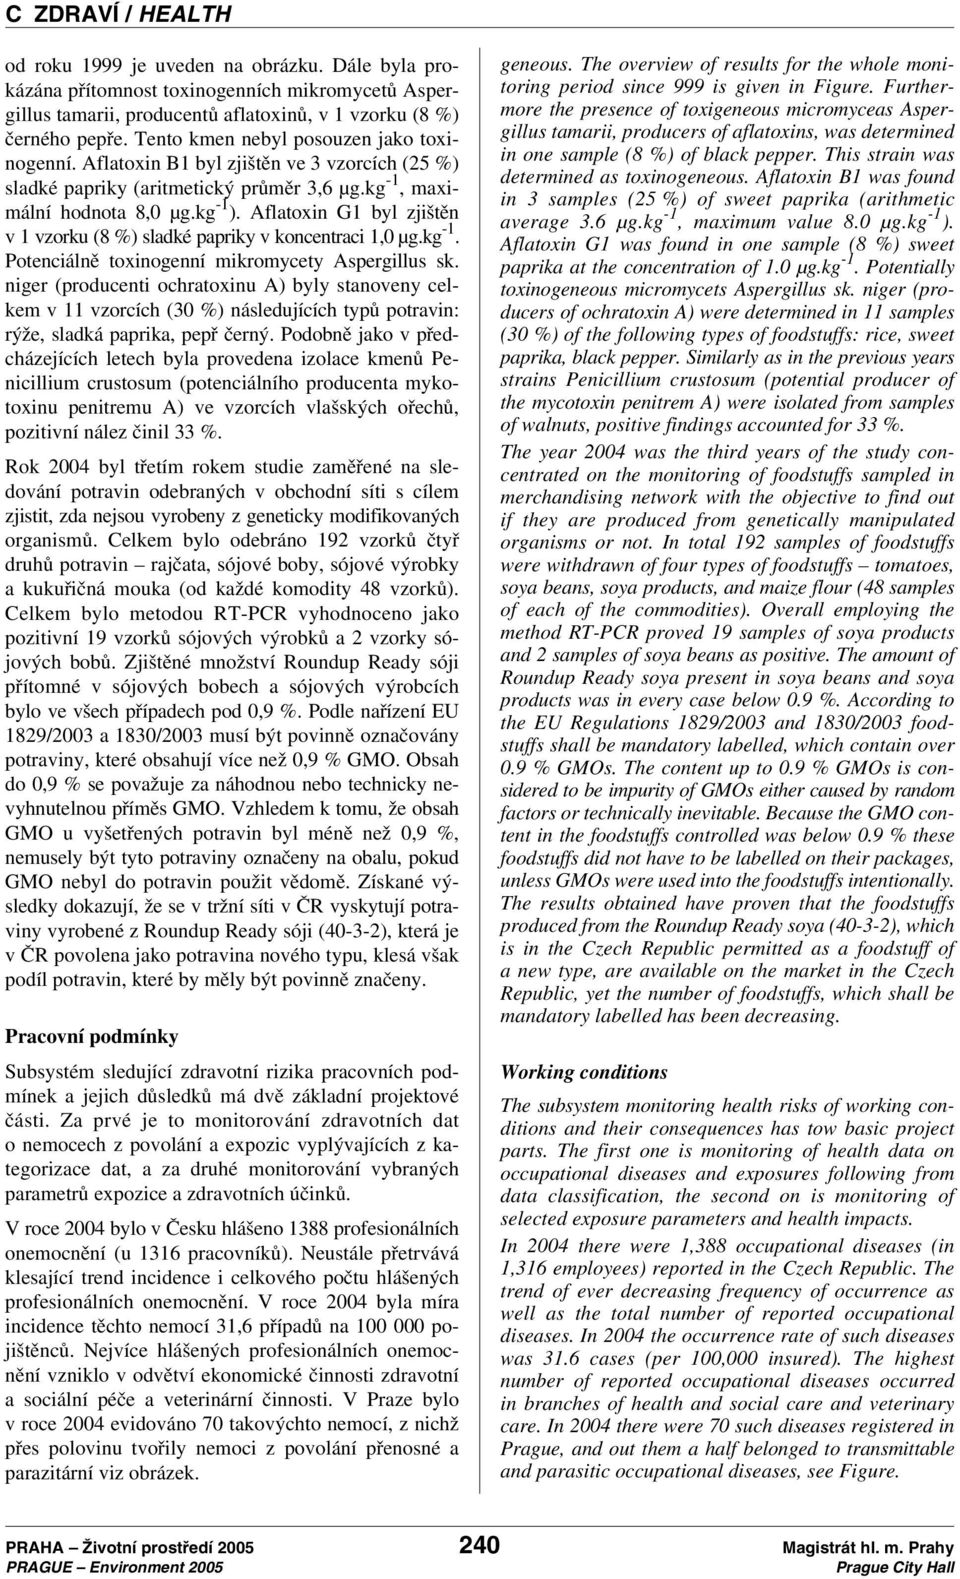 Aflatoxin G1 byl zjištěn v 1 vzorku (8 %)sladké papriky v koncentraci 1,0 µg.kg -1. Potenciálně toxinogenní mikromycety Aspergillus sk.